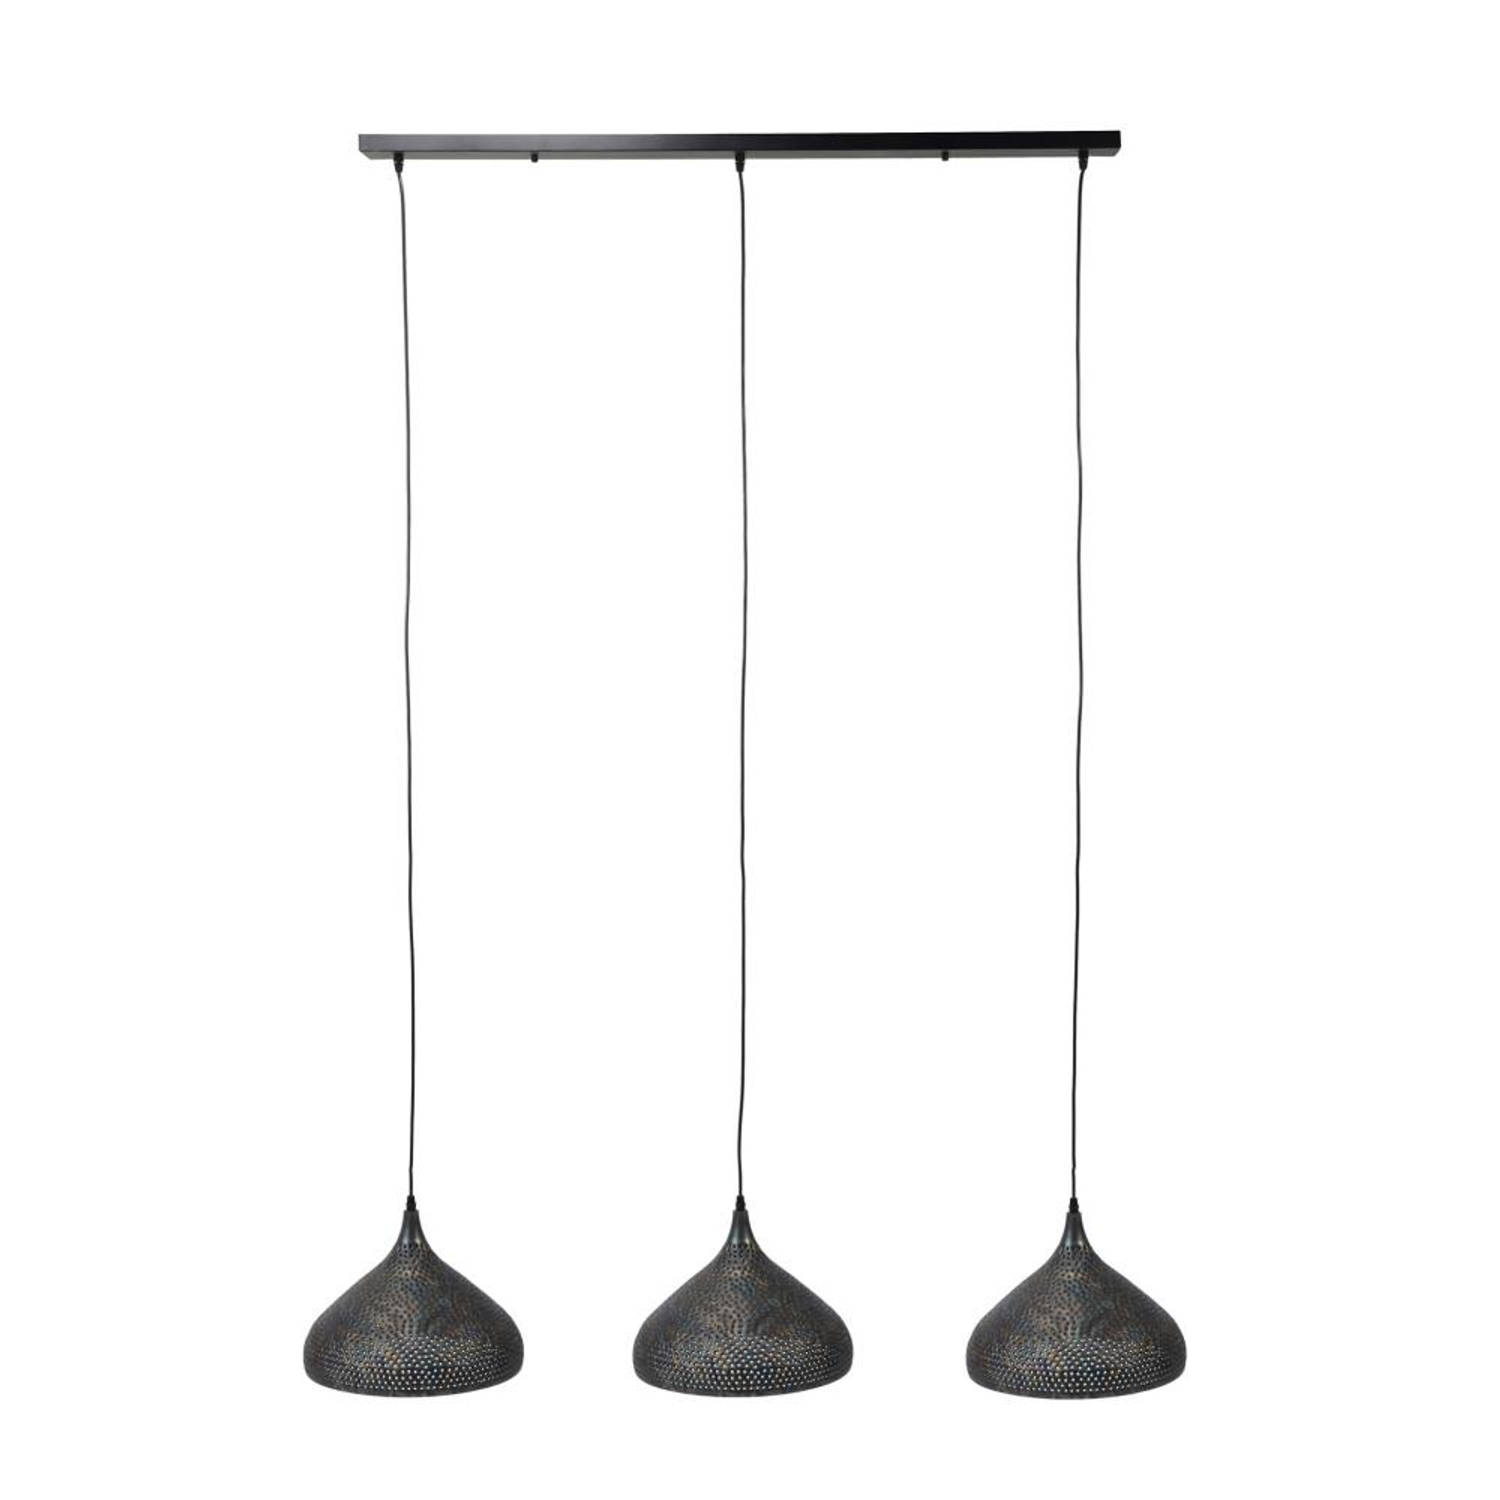 Hanglamp 3-Lichtbronnen - Ø32cm - Metaal - Lamp Punch Trechter - Giga Meubel